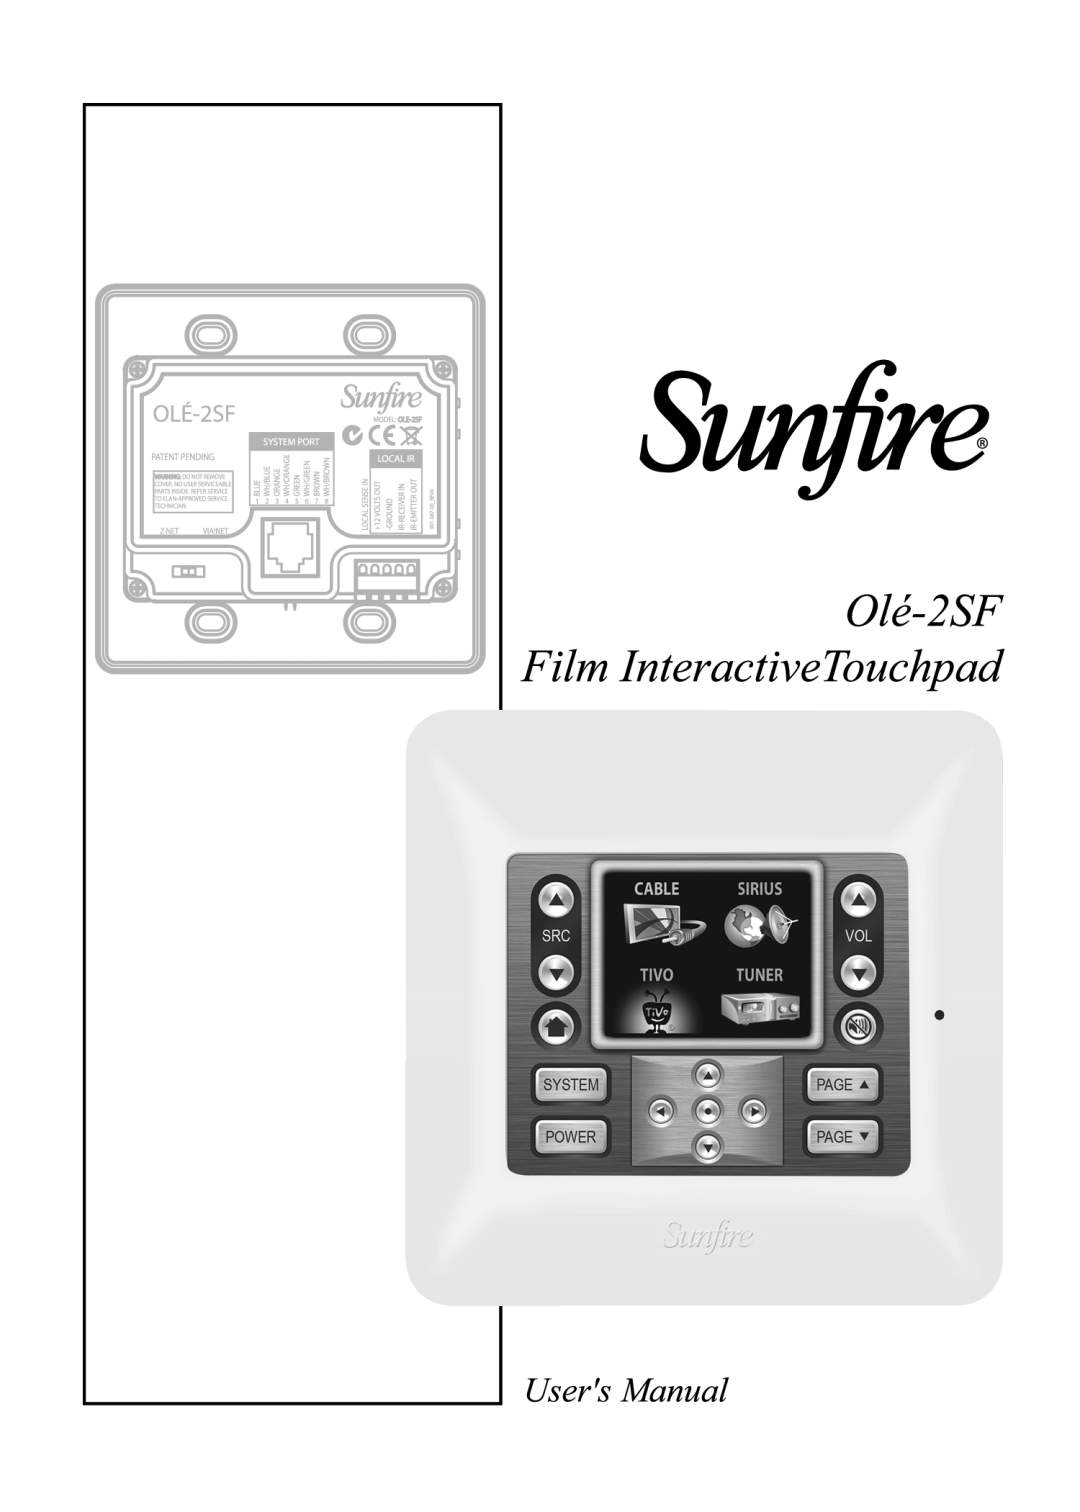 Sunfire OLE-2SF manual 